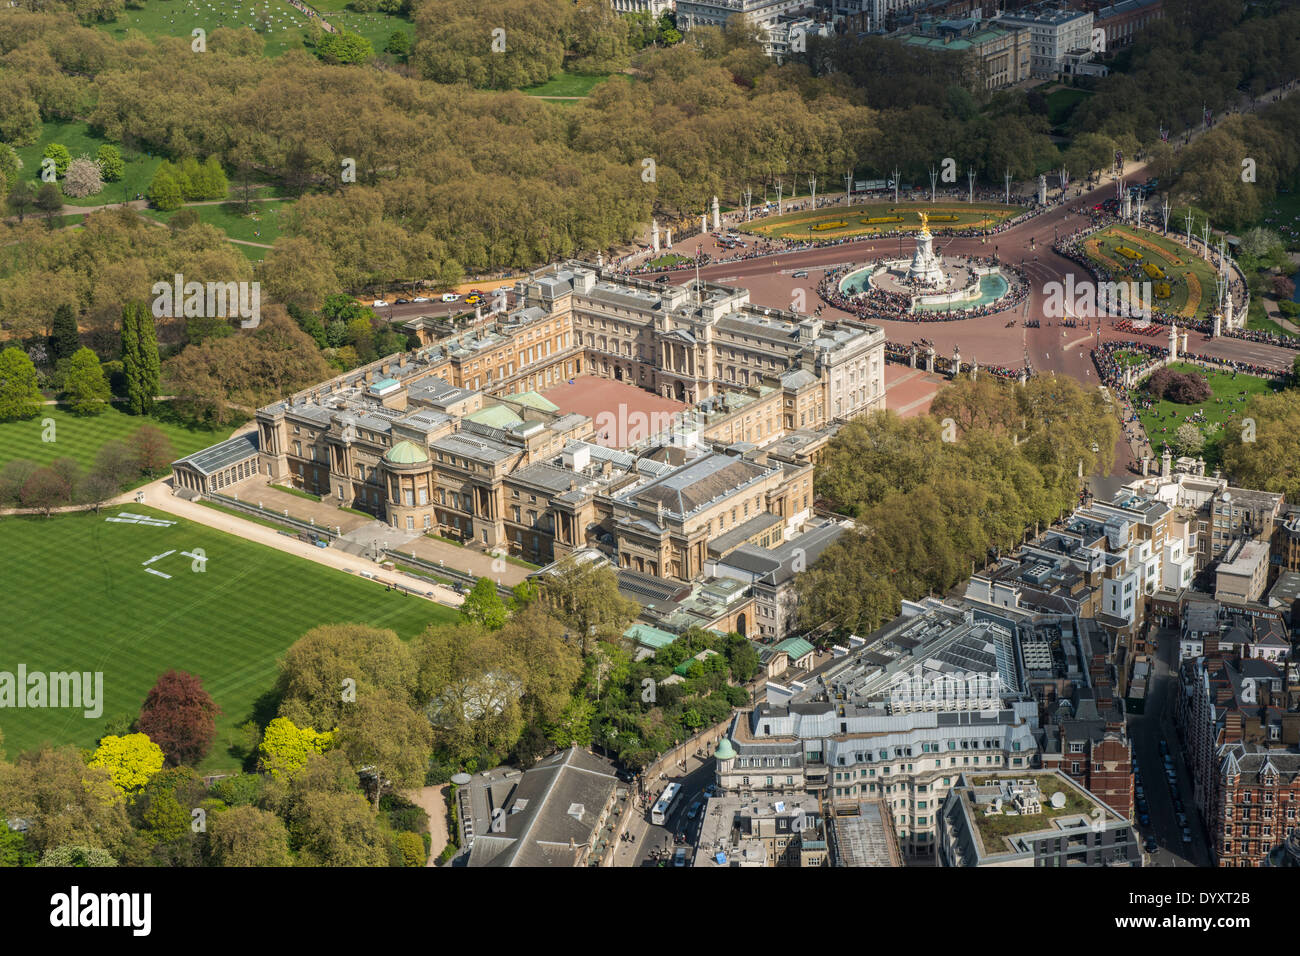 Vista aérea del Palacio de Buckingham, el jardín, el Victoria Memorial y el parque verde en el fondo. Foto de stock